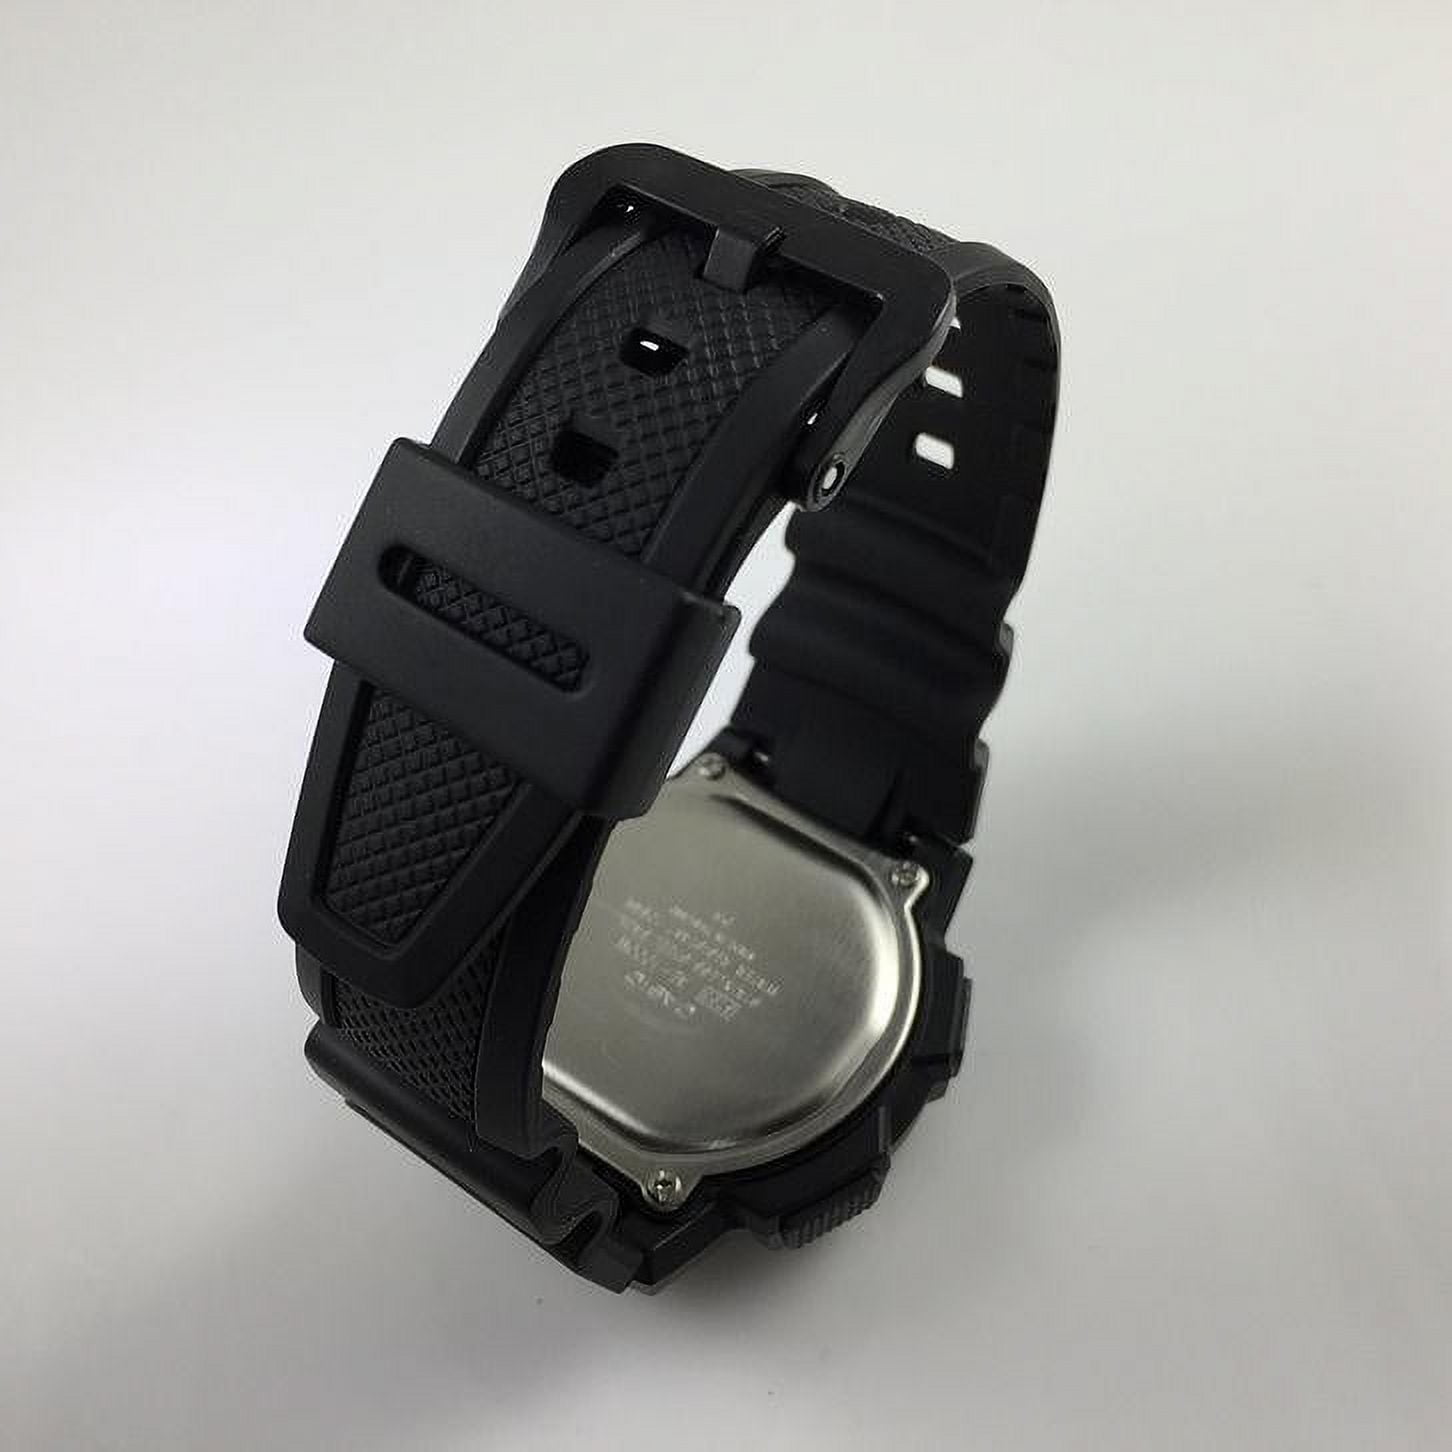 AE1000W-1A3V, Illuminator Black and Gold Digital Watch